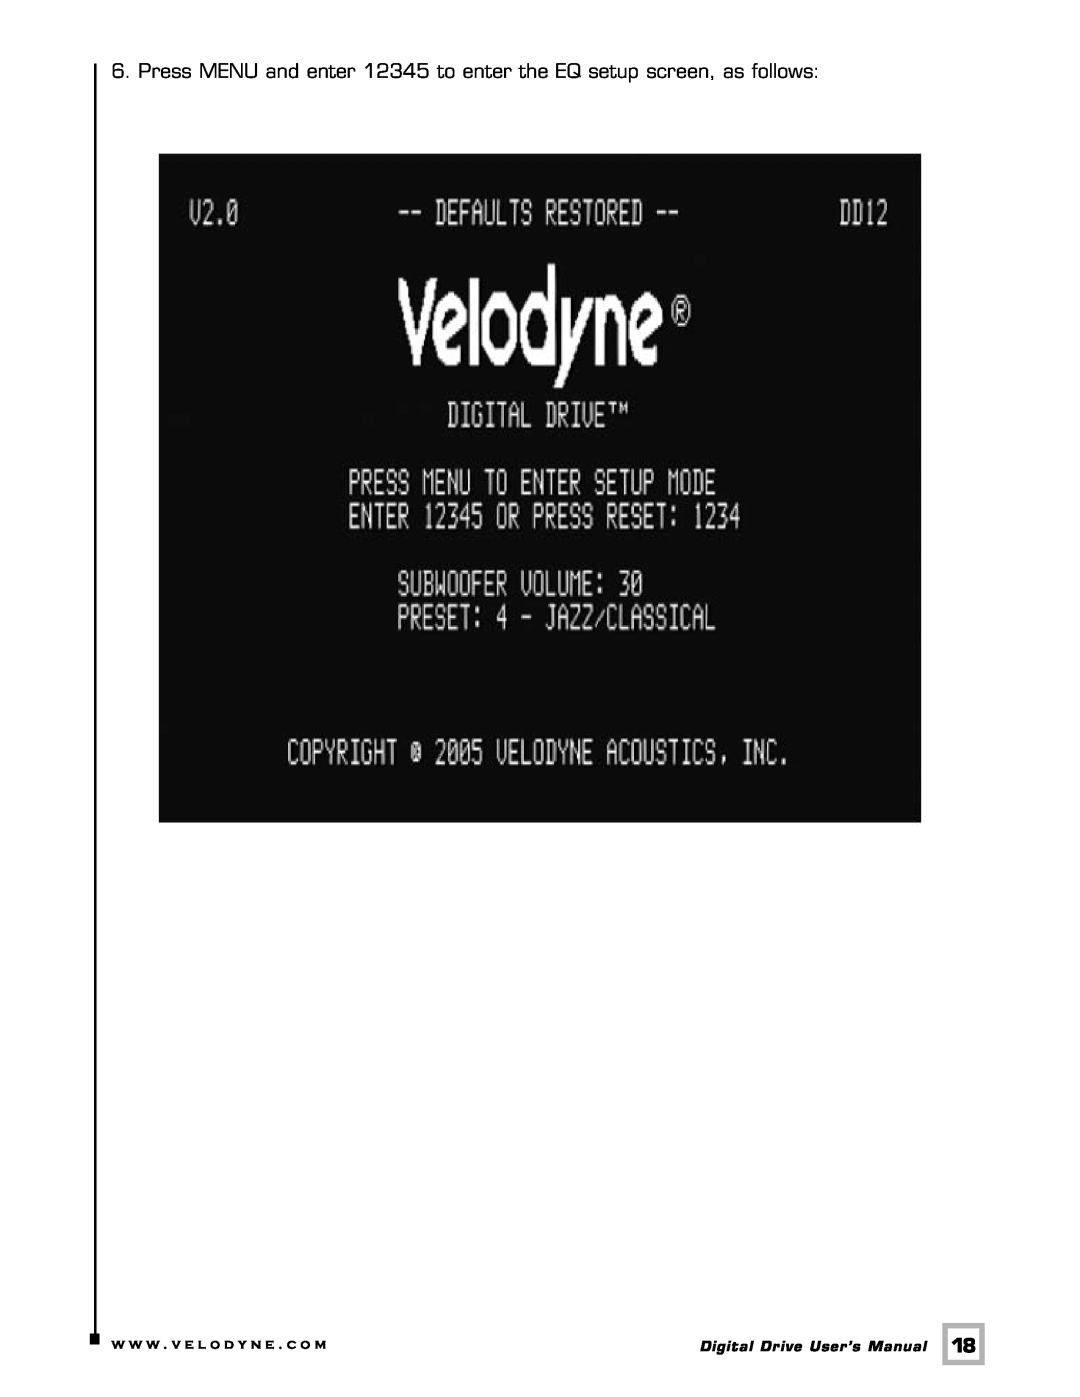 Velodyne Acoustics Digital Drive user manual w w w . v e l o d y n e . c o m 